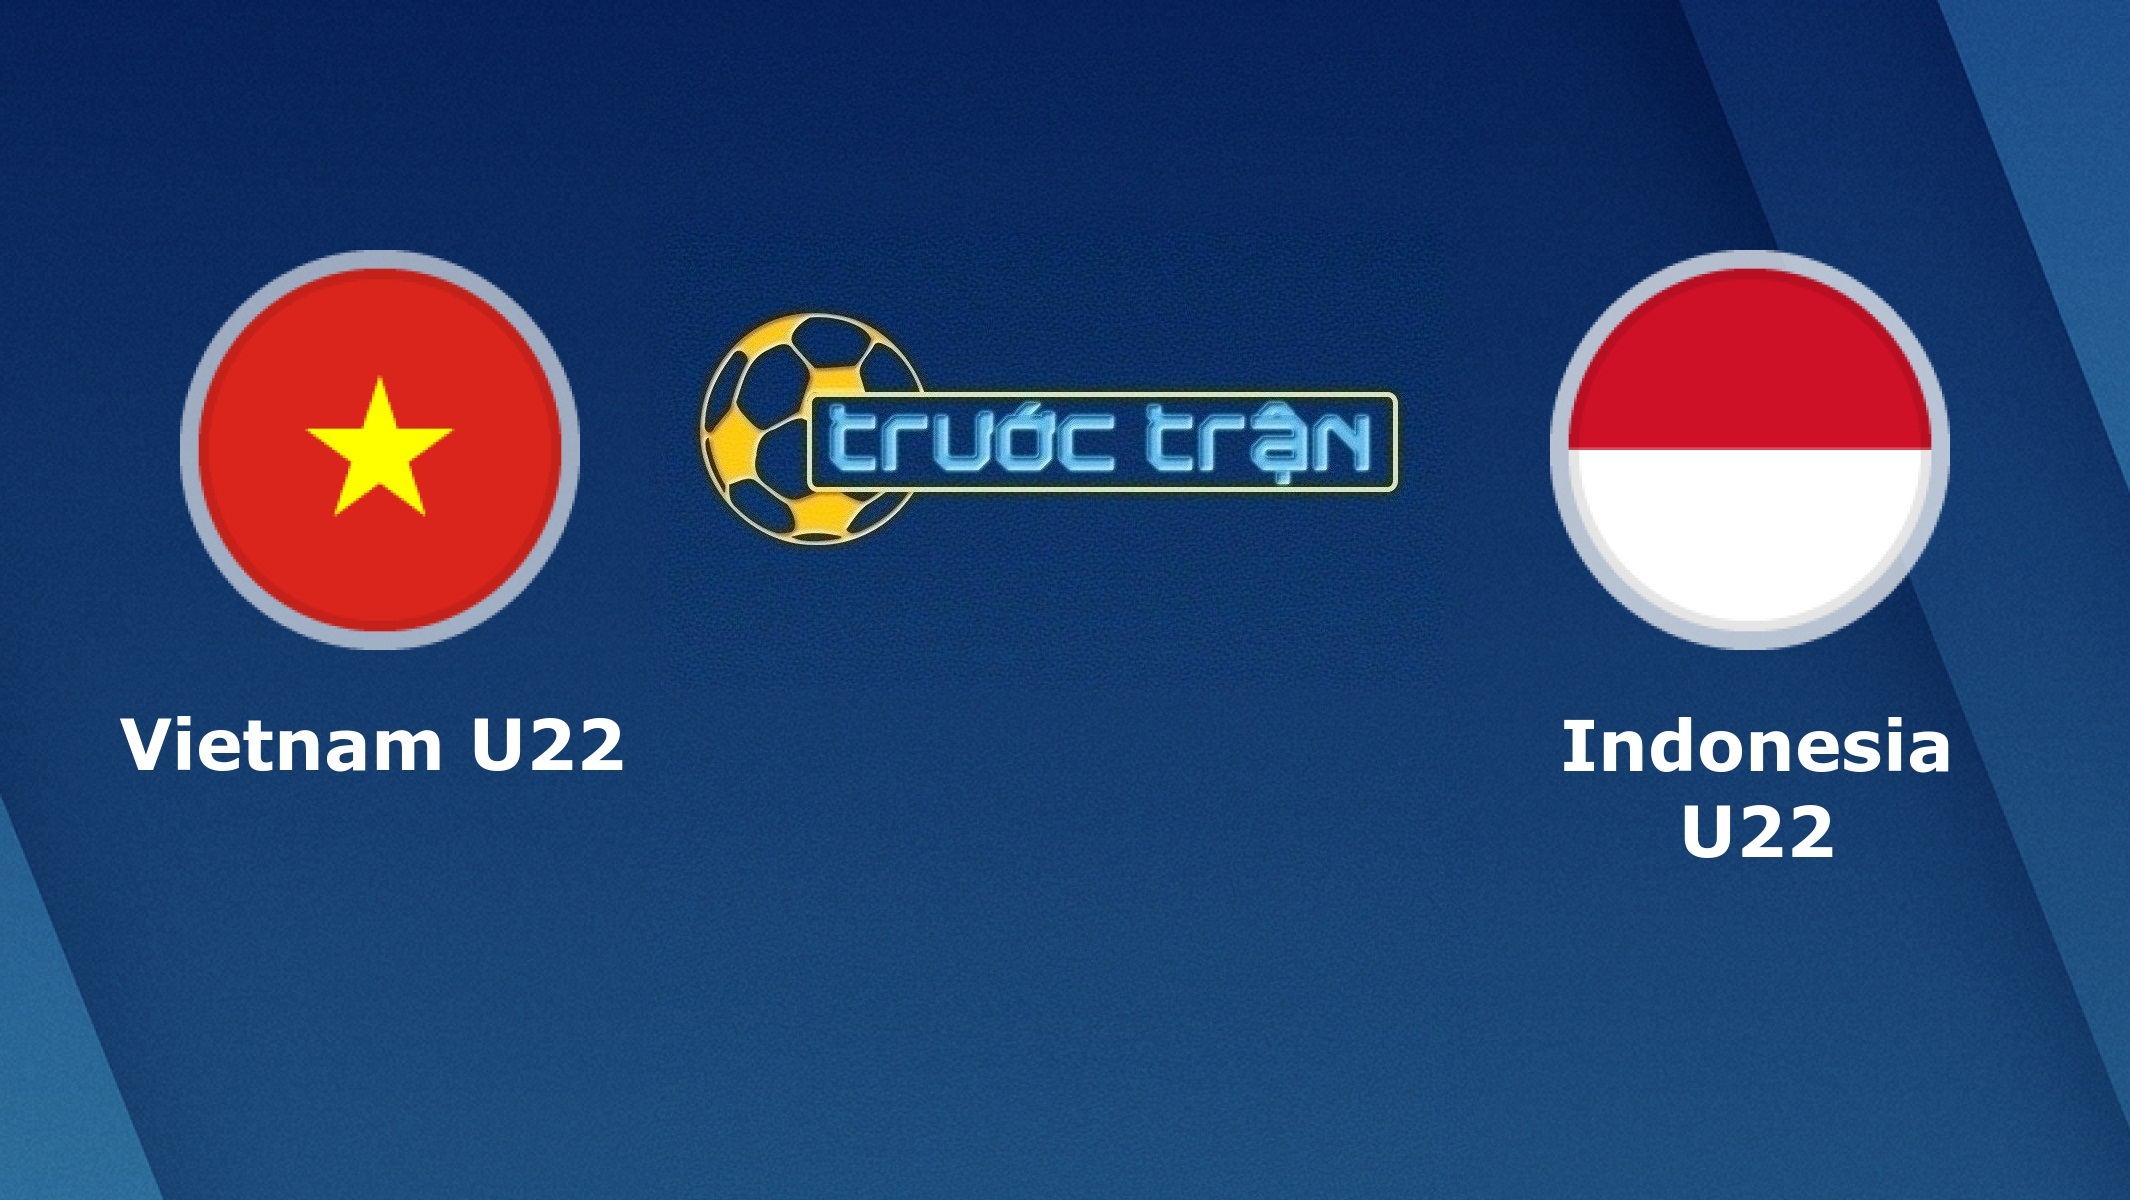 U22 Việt Nam vs U22 Indonesia – Tip kèo bóng đá hôm nay – 01/12